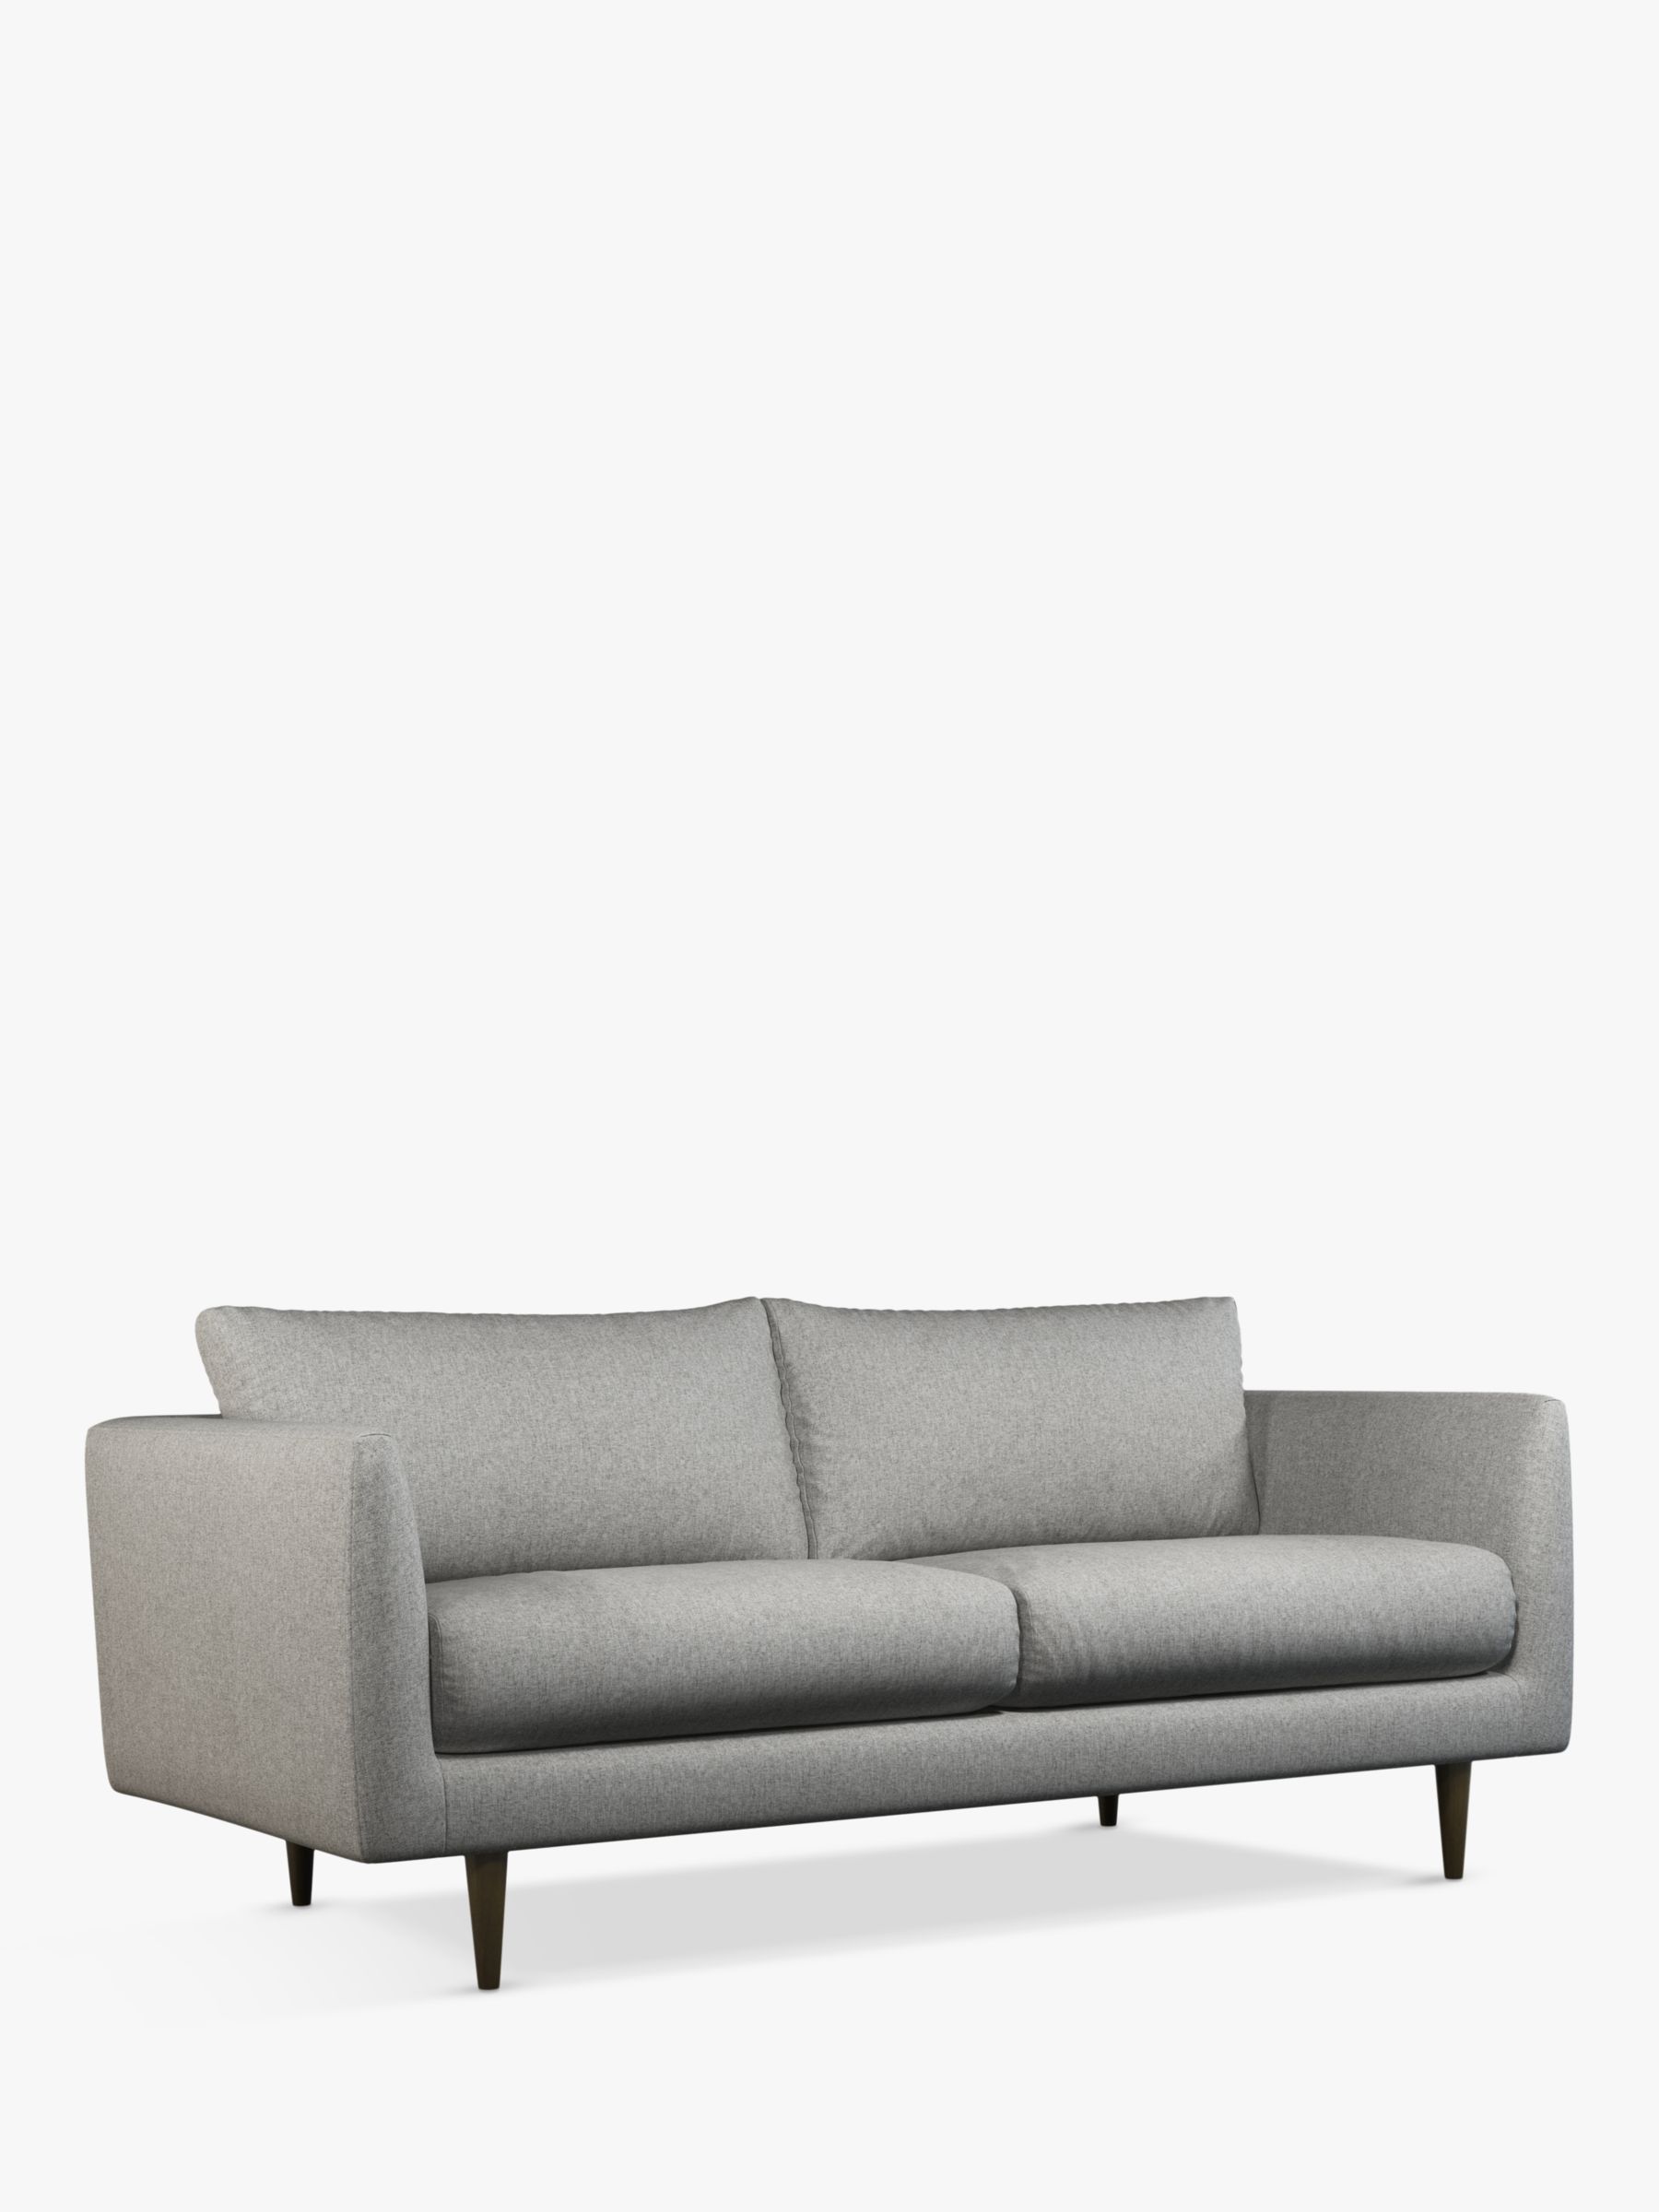 Latimer Range, John Lewis + Swoon Latimer Medium 2 Seater Sofa, Cinder Grey Wool